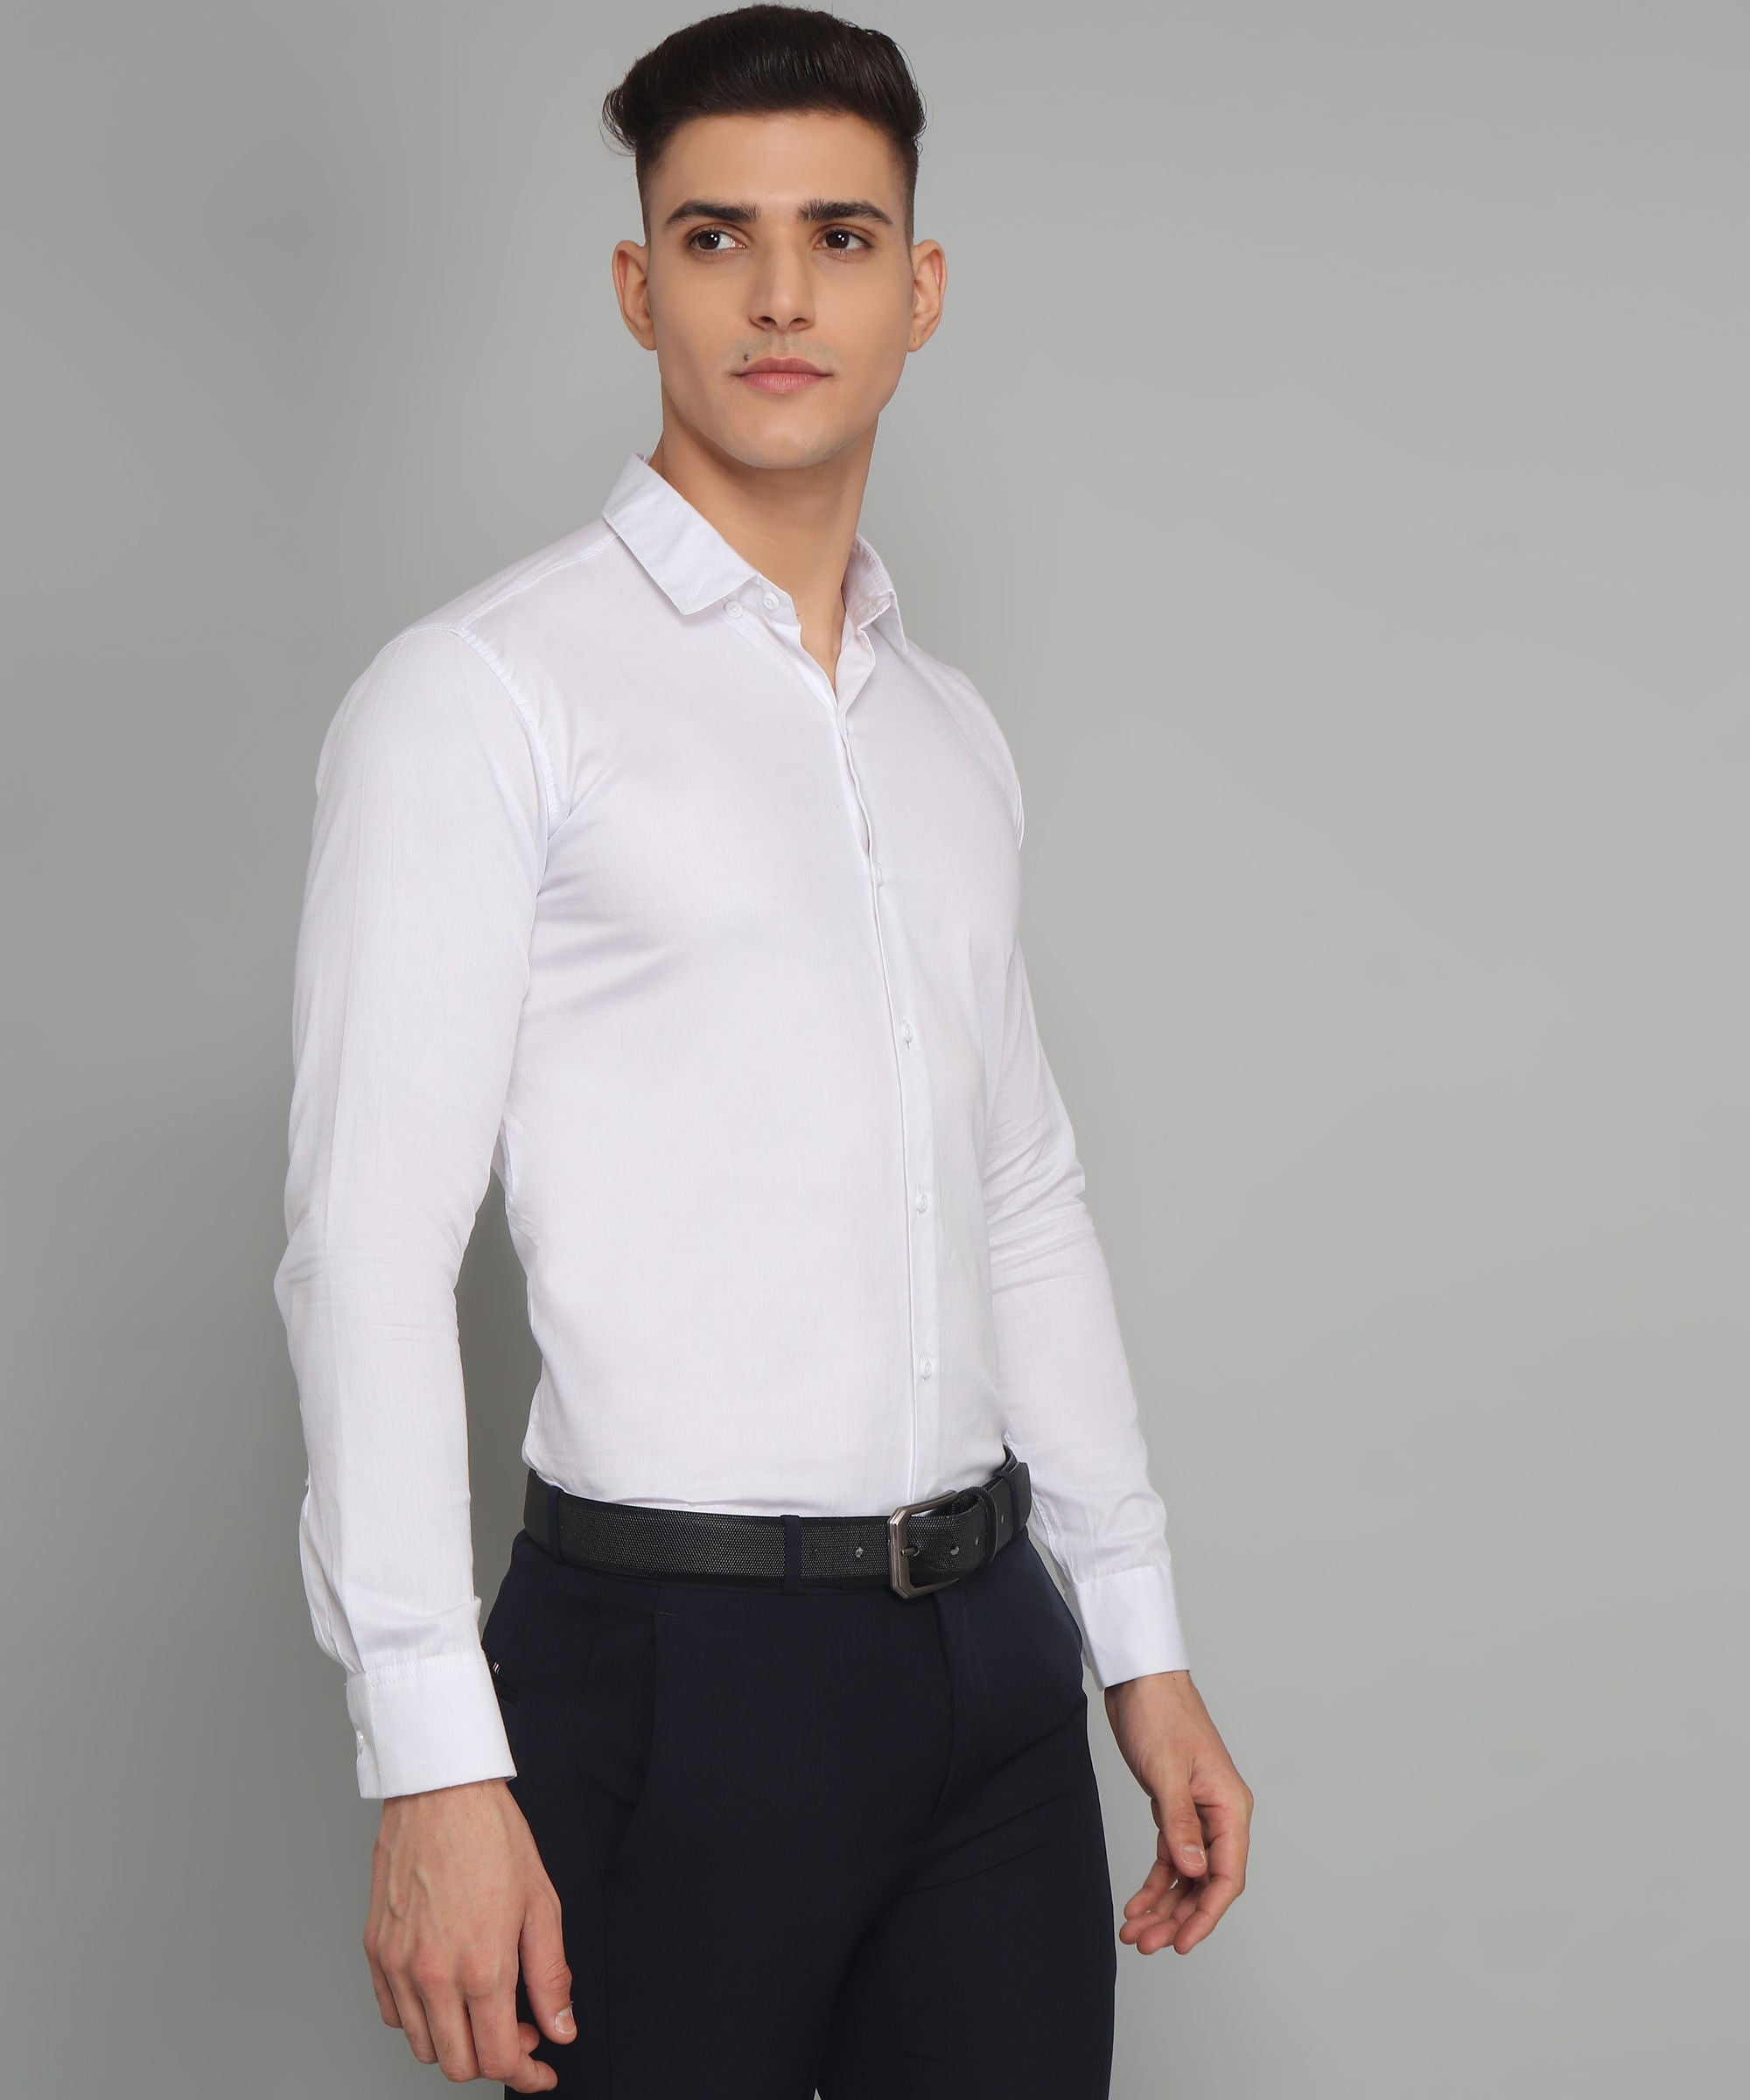 पुरुषों के लिए विशेष TryBuy प्रीमियम सफेद कैज़ुअल/फॉर्मल शर्ट